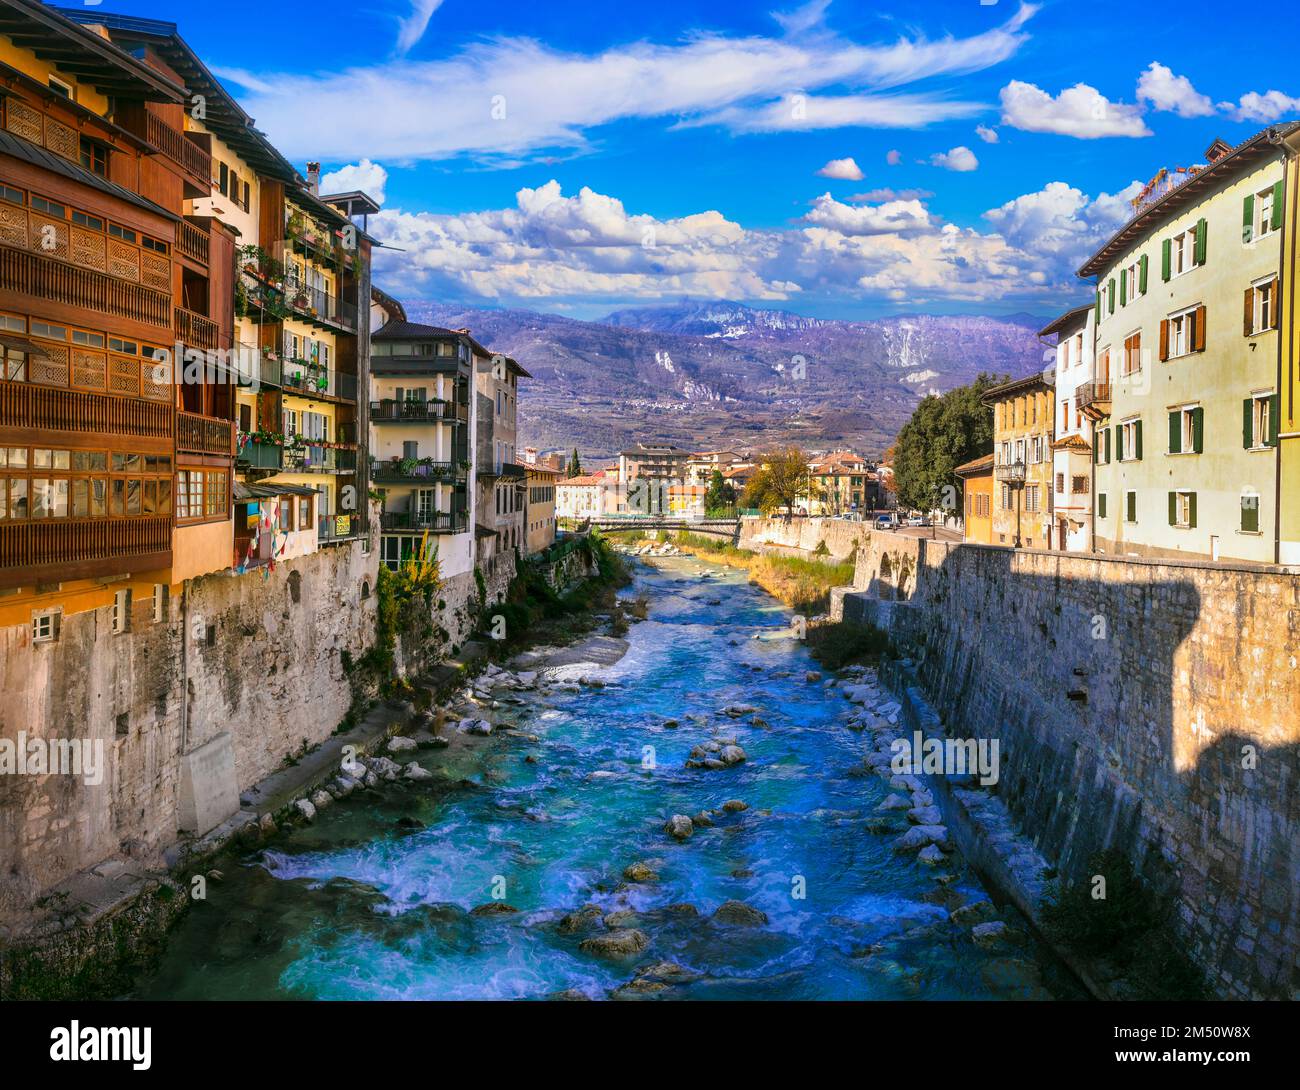 Rovereto - wunderschöne historische Stadt in Trentino-Südtirol, nördliche Region Italiens. Stockfoto